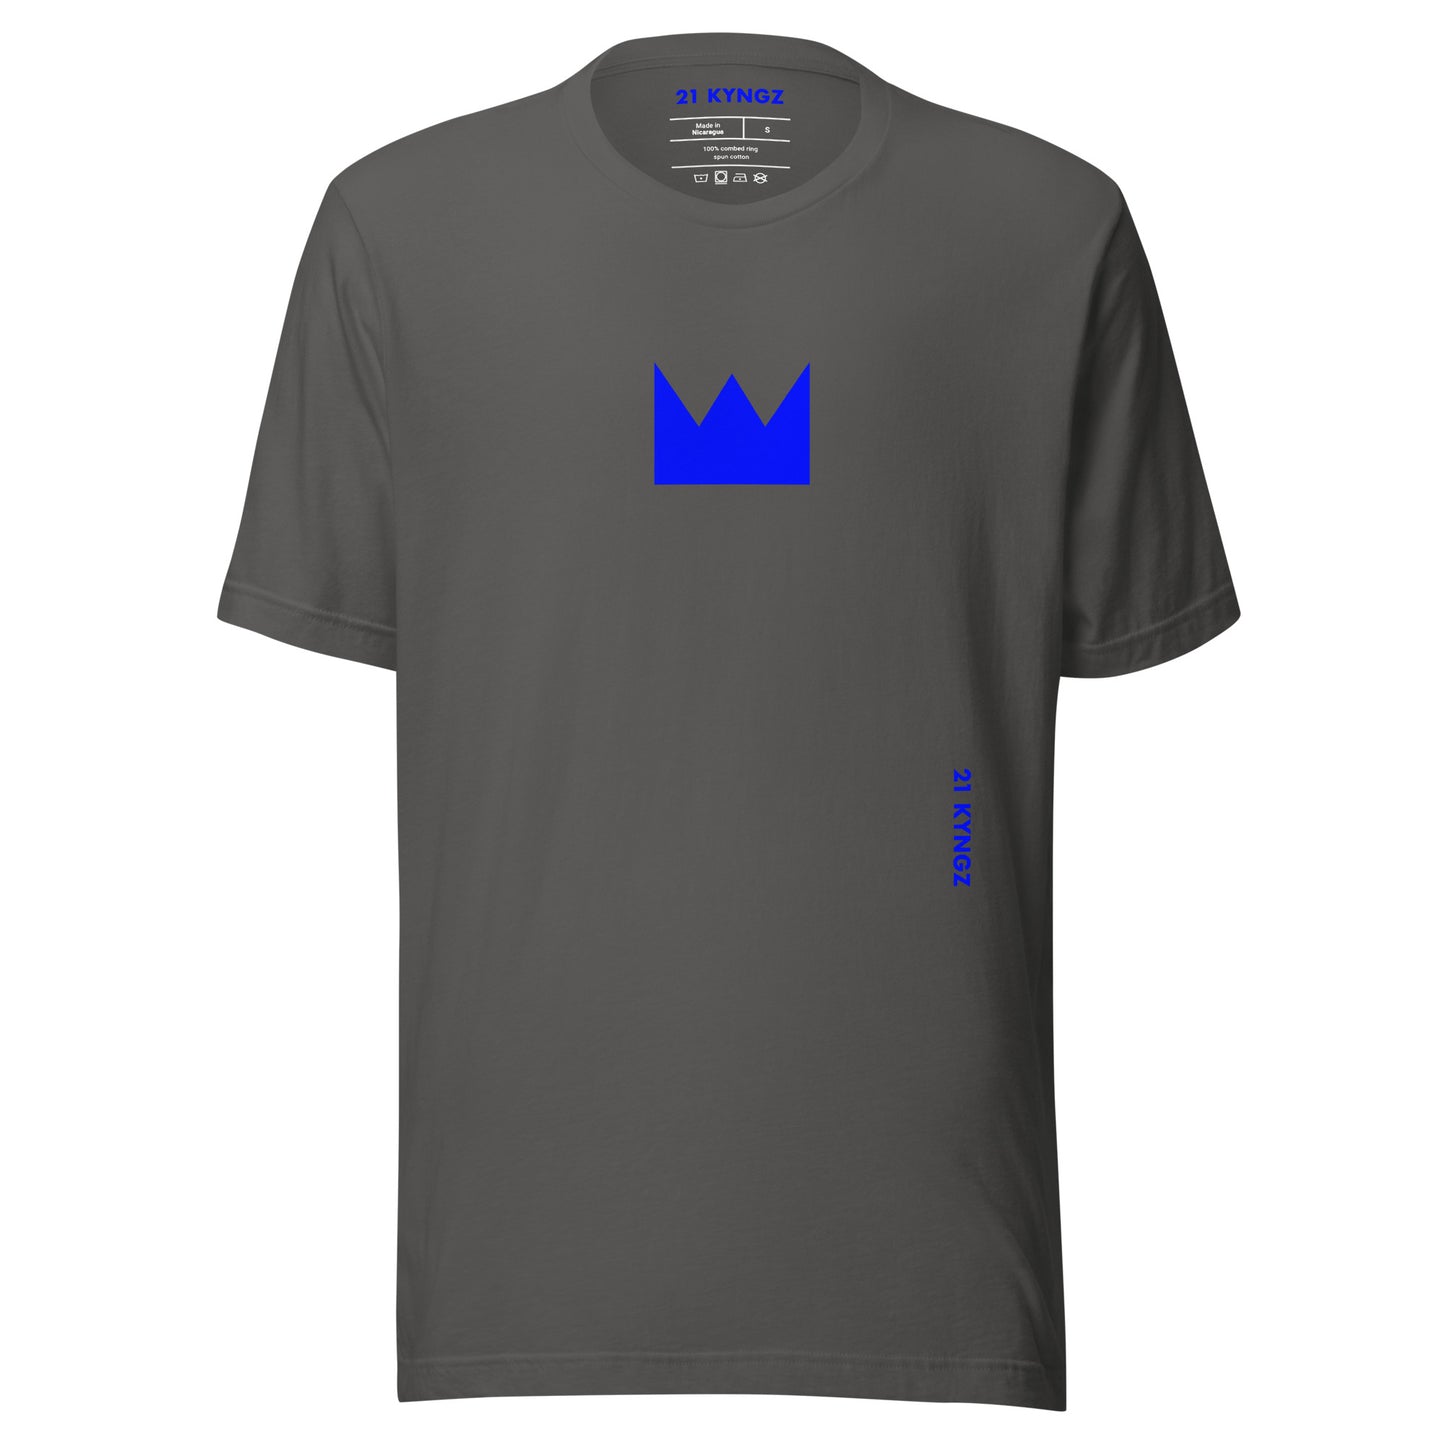 21 KYNGZ (Bl) Unisex t-shirt